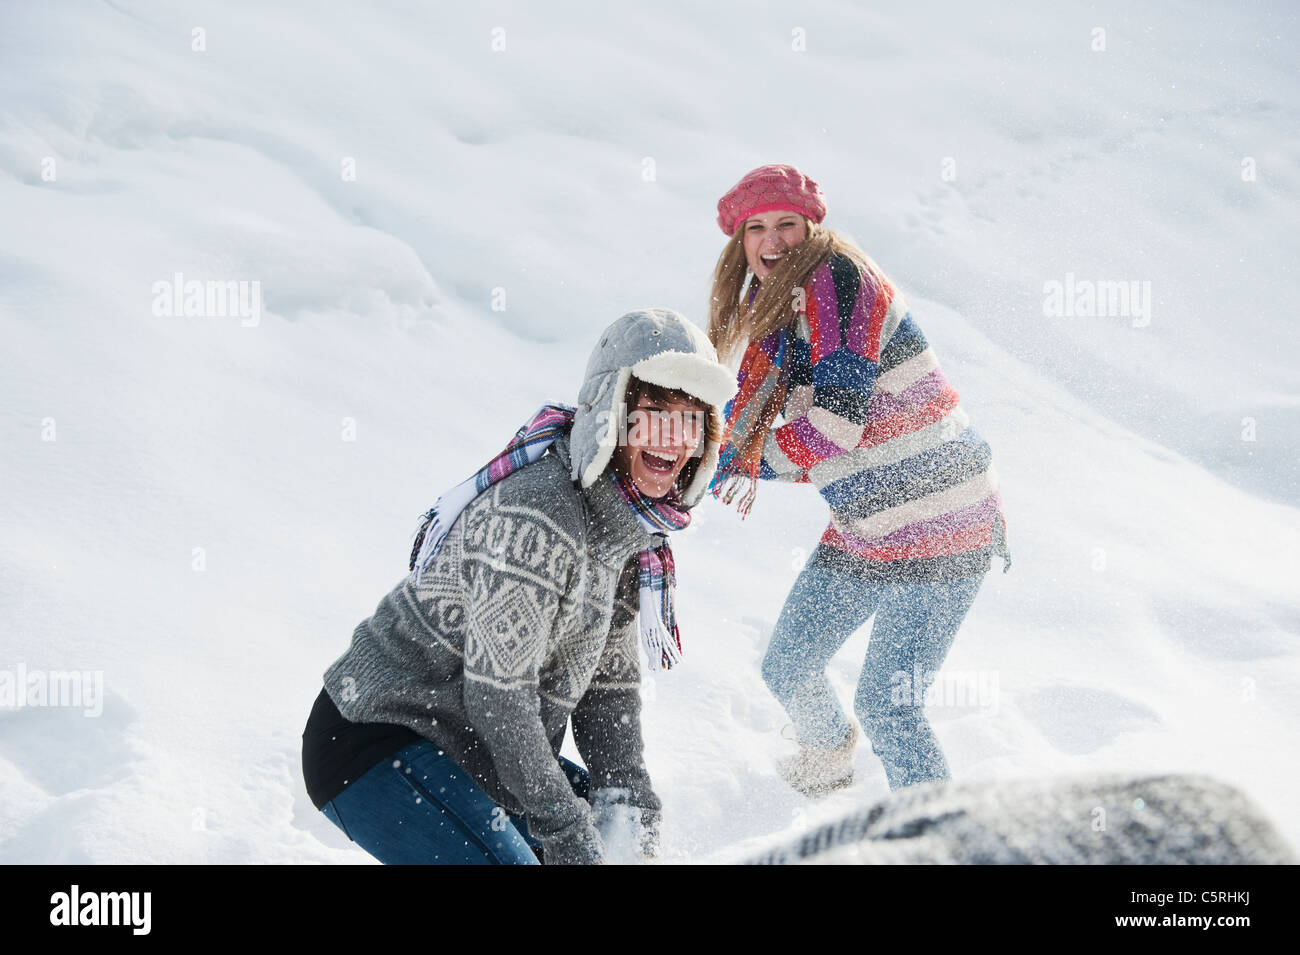 Österreich, Salzburger Land, Flachau, junge Frauen Schnee kämpfen im Schnee Stockfoto